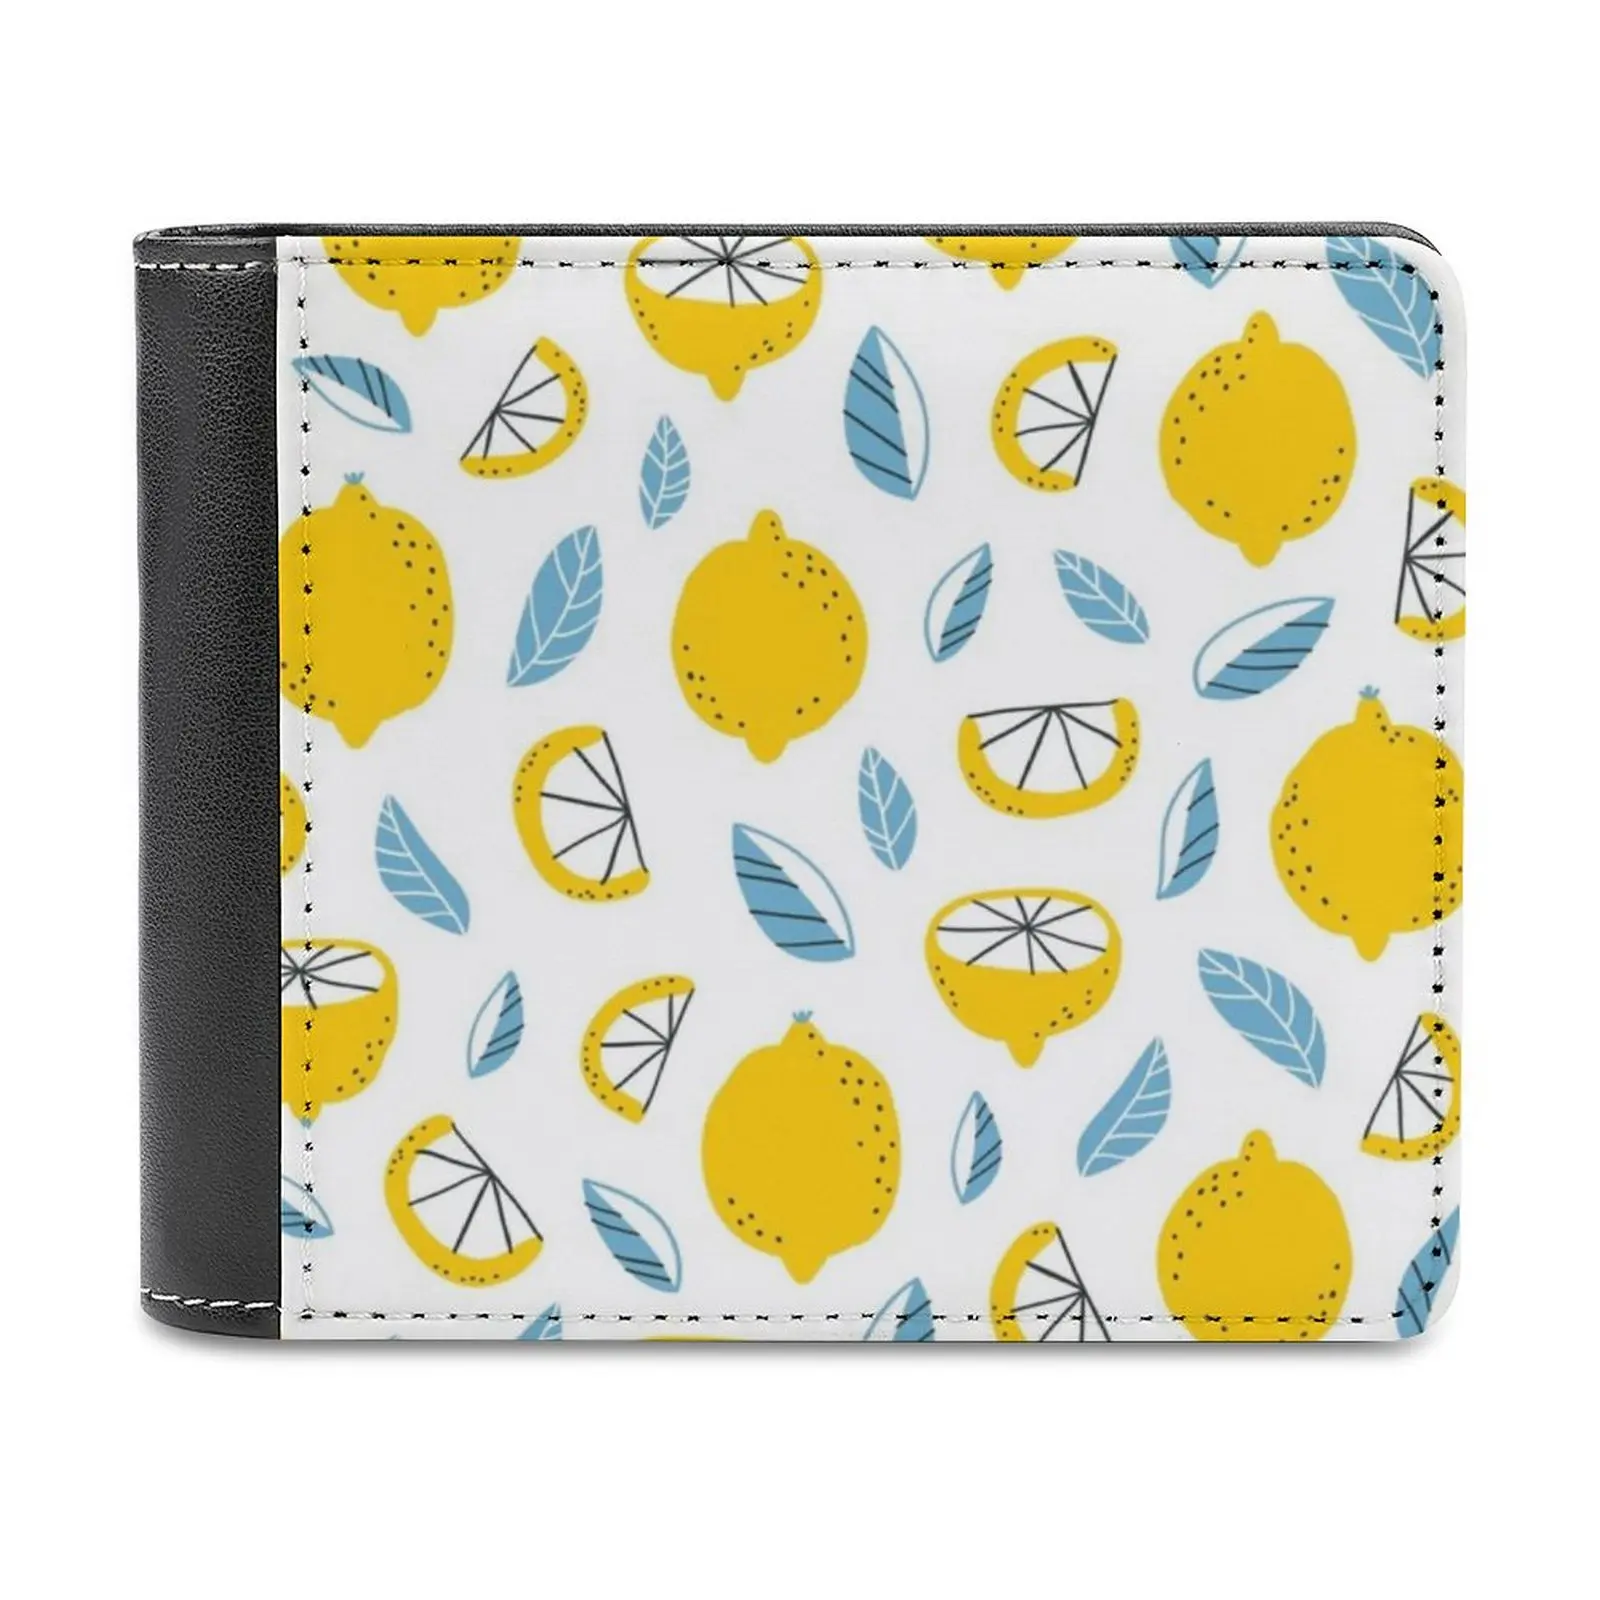 

Кожаный кошелек из лимона для мужчин, классический черный бумажник с держателем для кредитных карт, модный мужской кошелек с тропическим бесшовным рисунком из лимона и фруктов